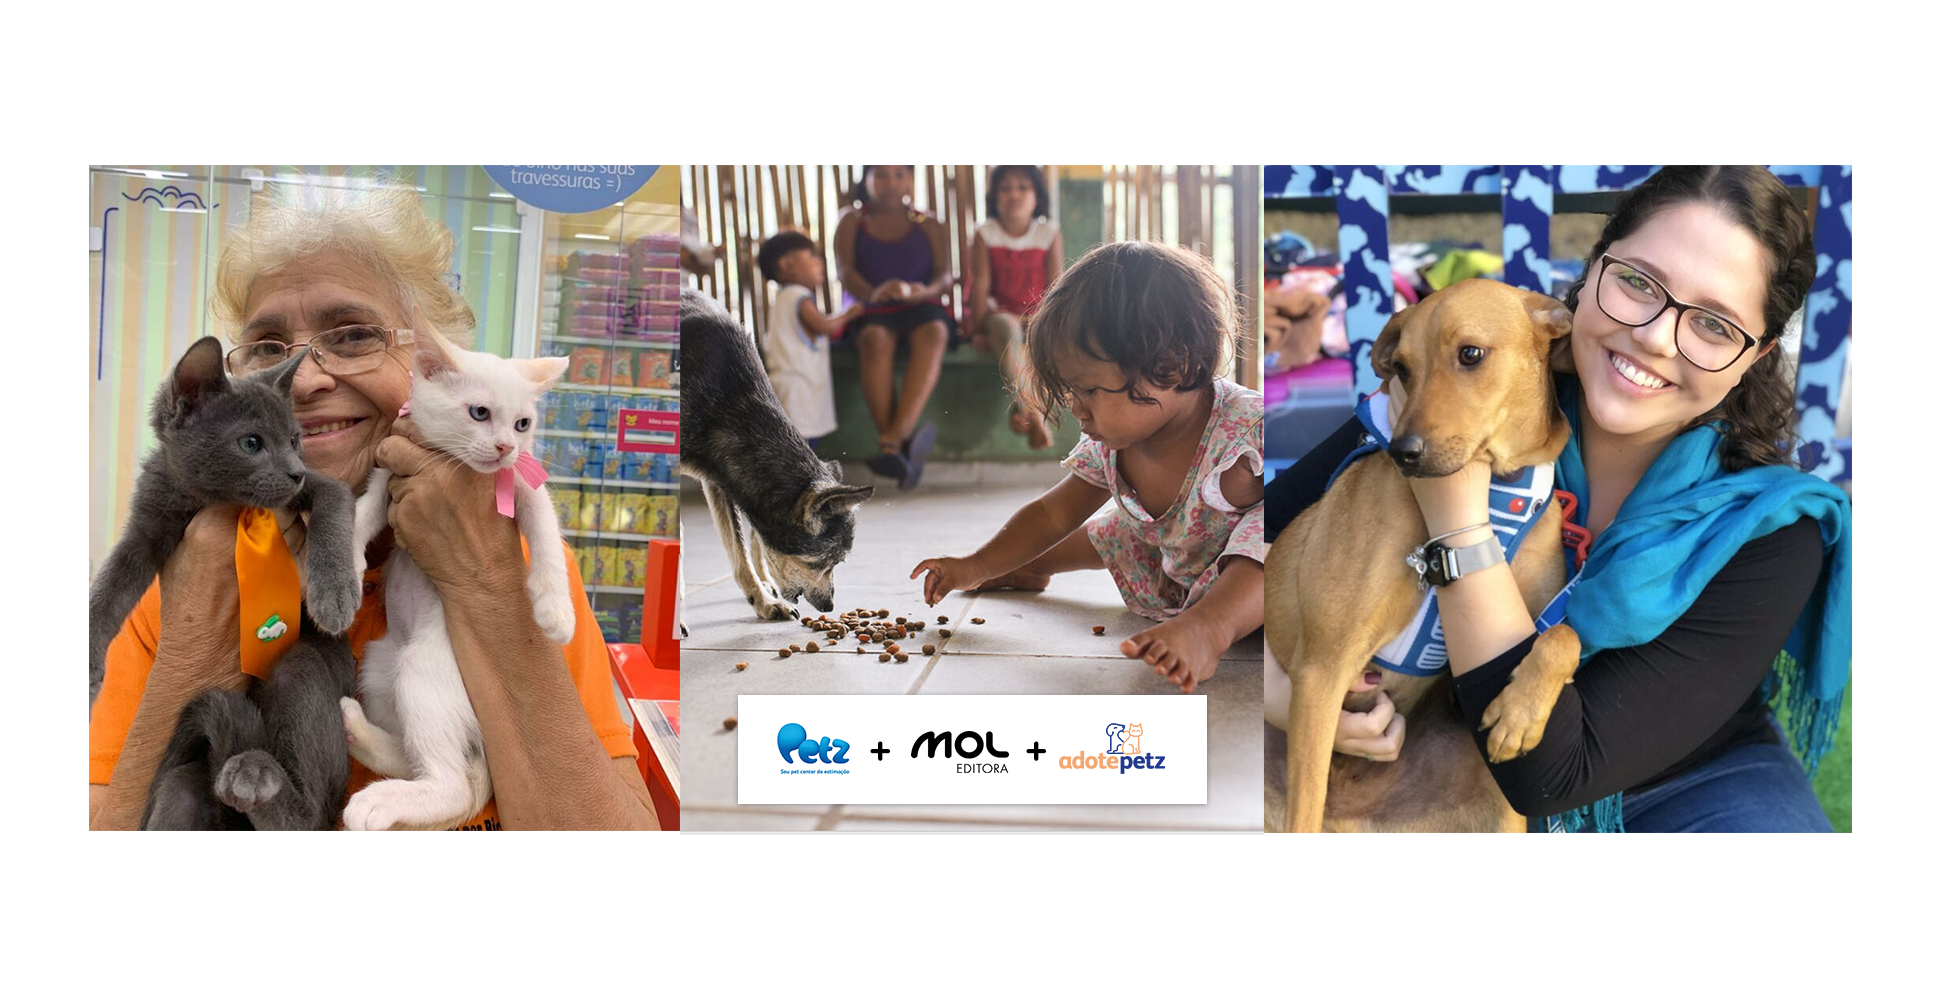 A partir de agora, as doações geradas pelos produtos da MOL vendidos na Petz também contribuirão para a profissionalização de ONGs